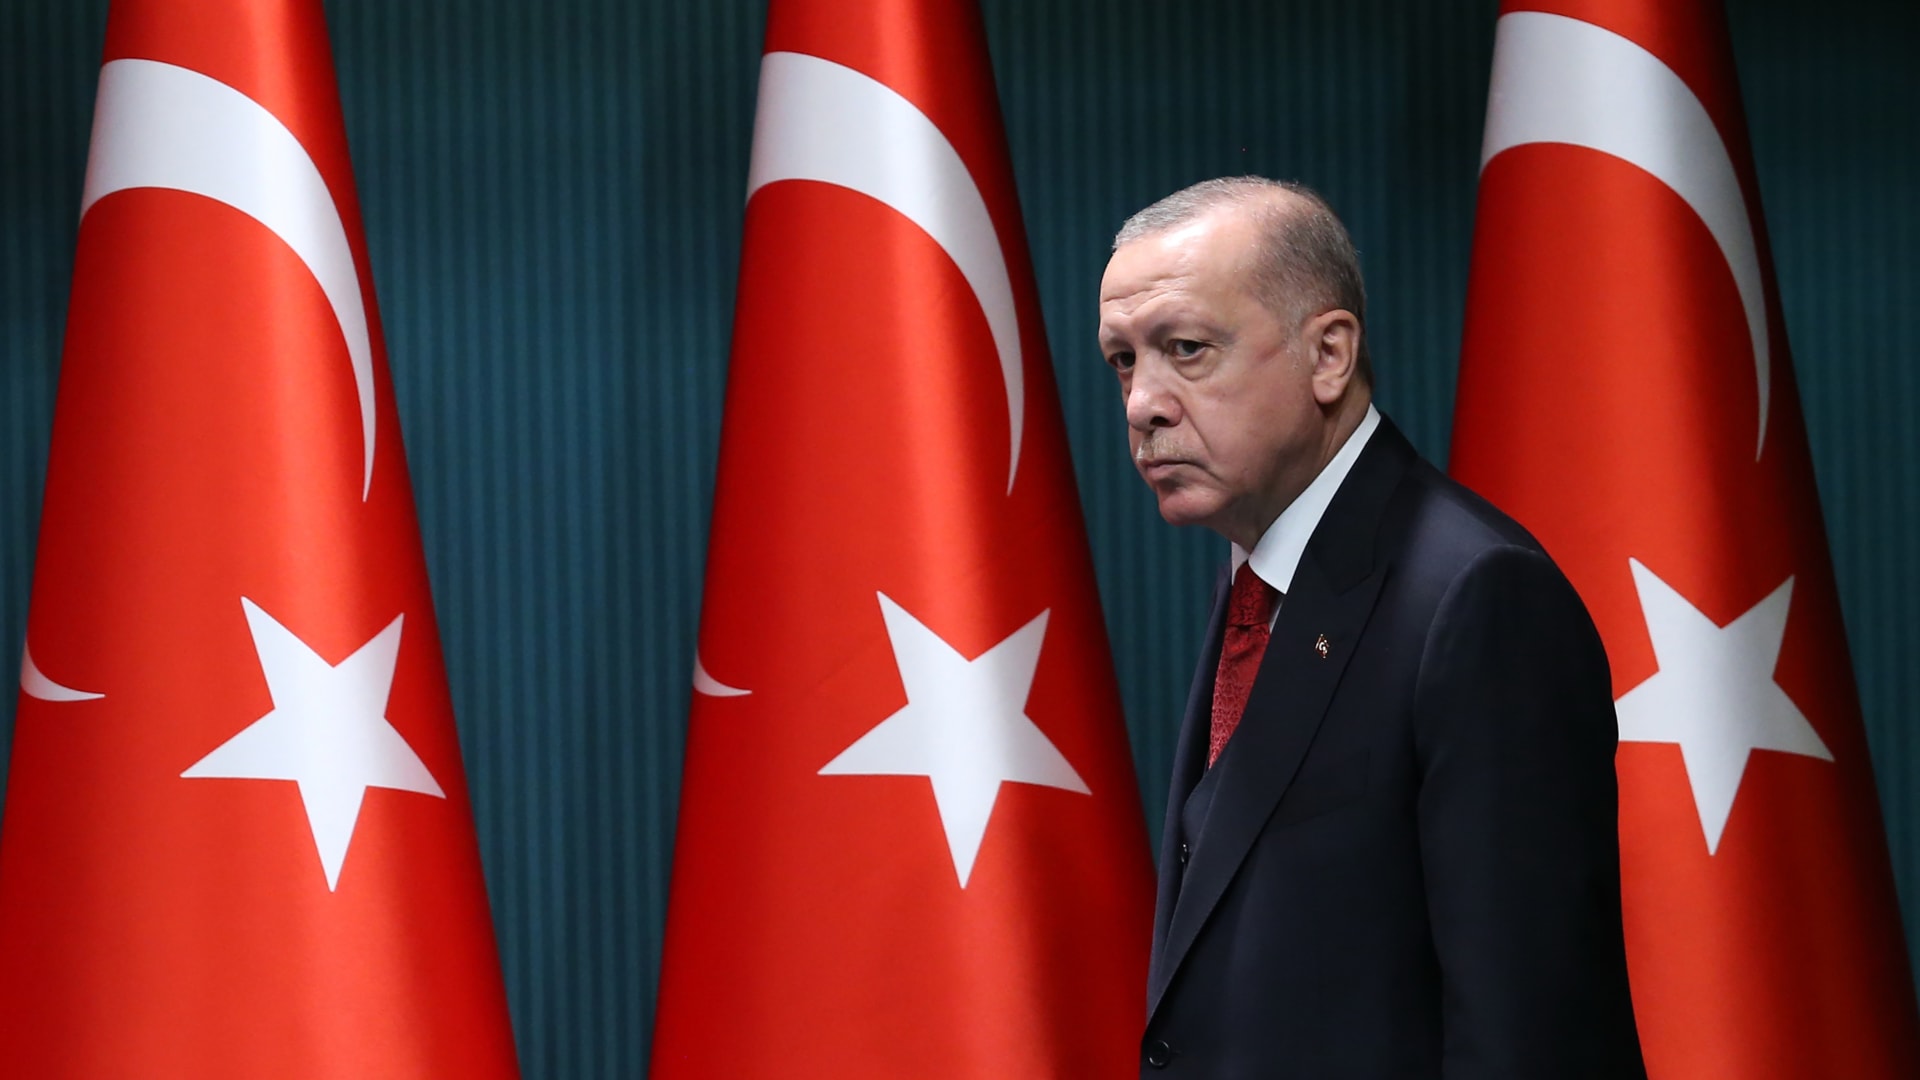 فرنسا تستدعي سفيرها إلى تركيا بعد تصريح أردوغان "ماكرون يحتاج علاجاً نفسياً"